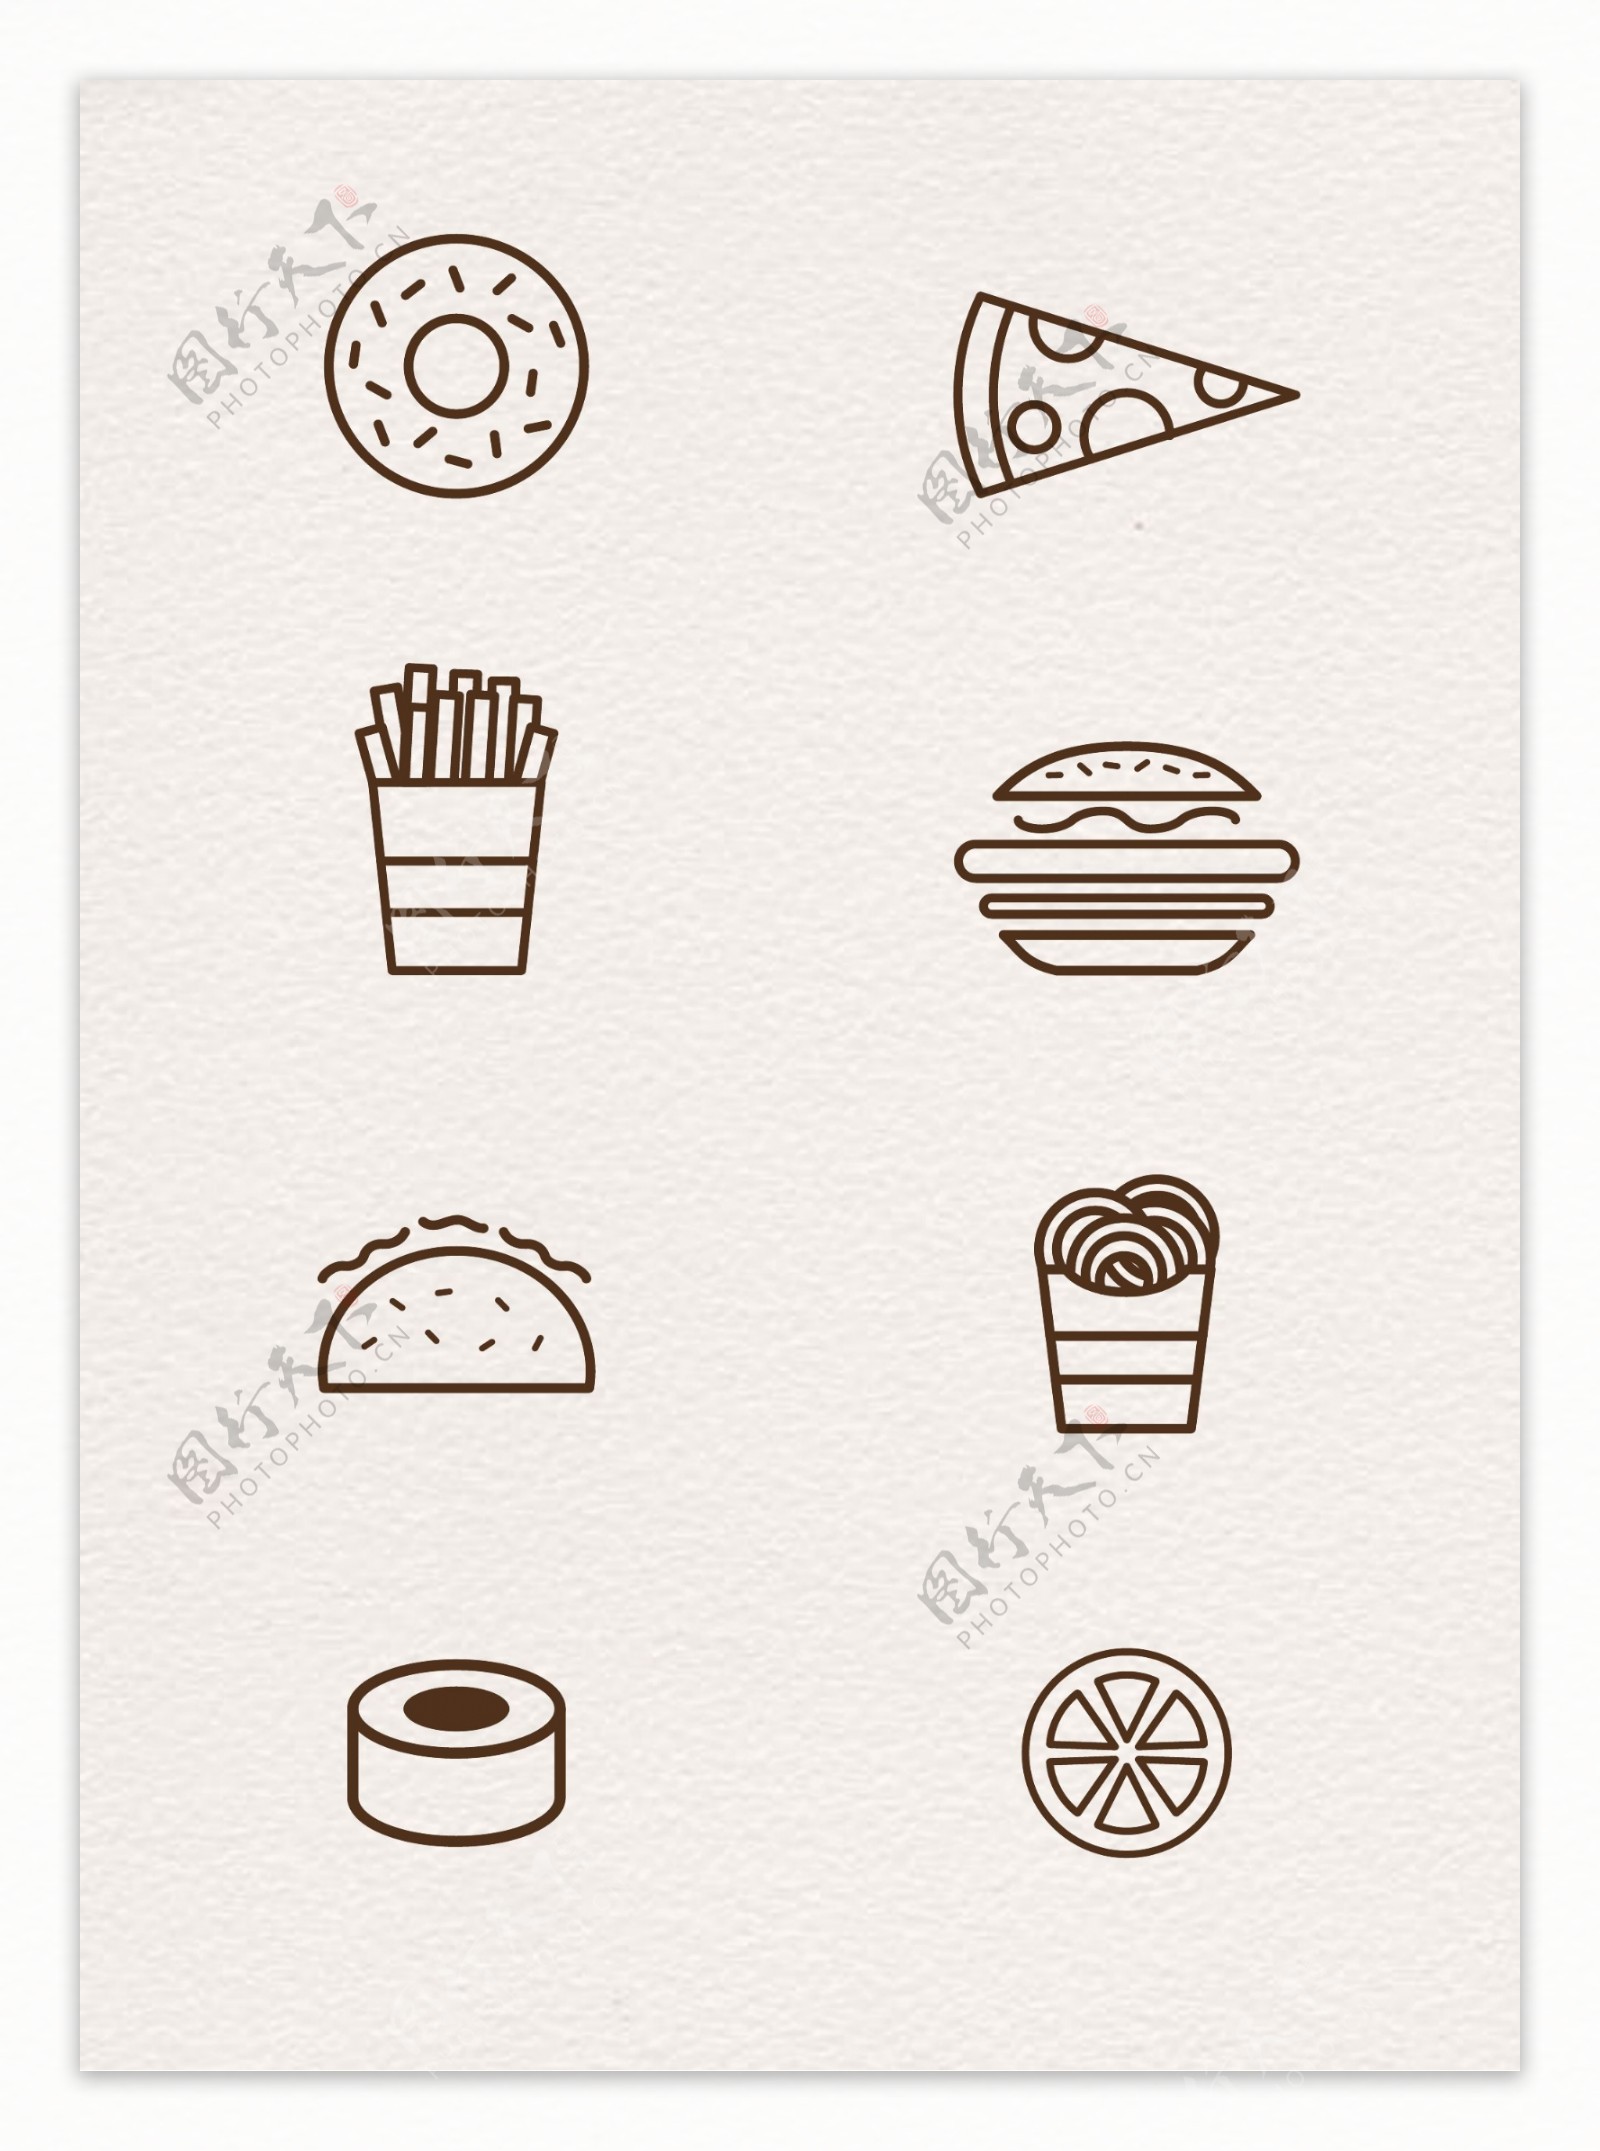 快餐食品手绘线条图标